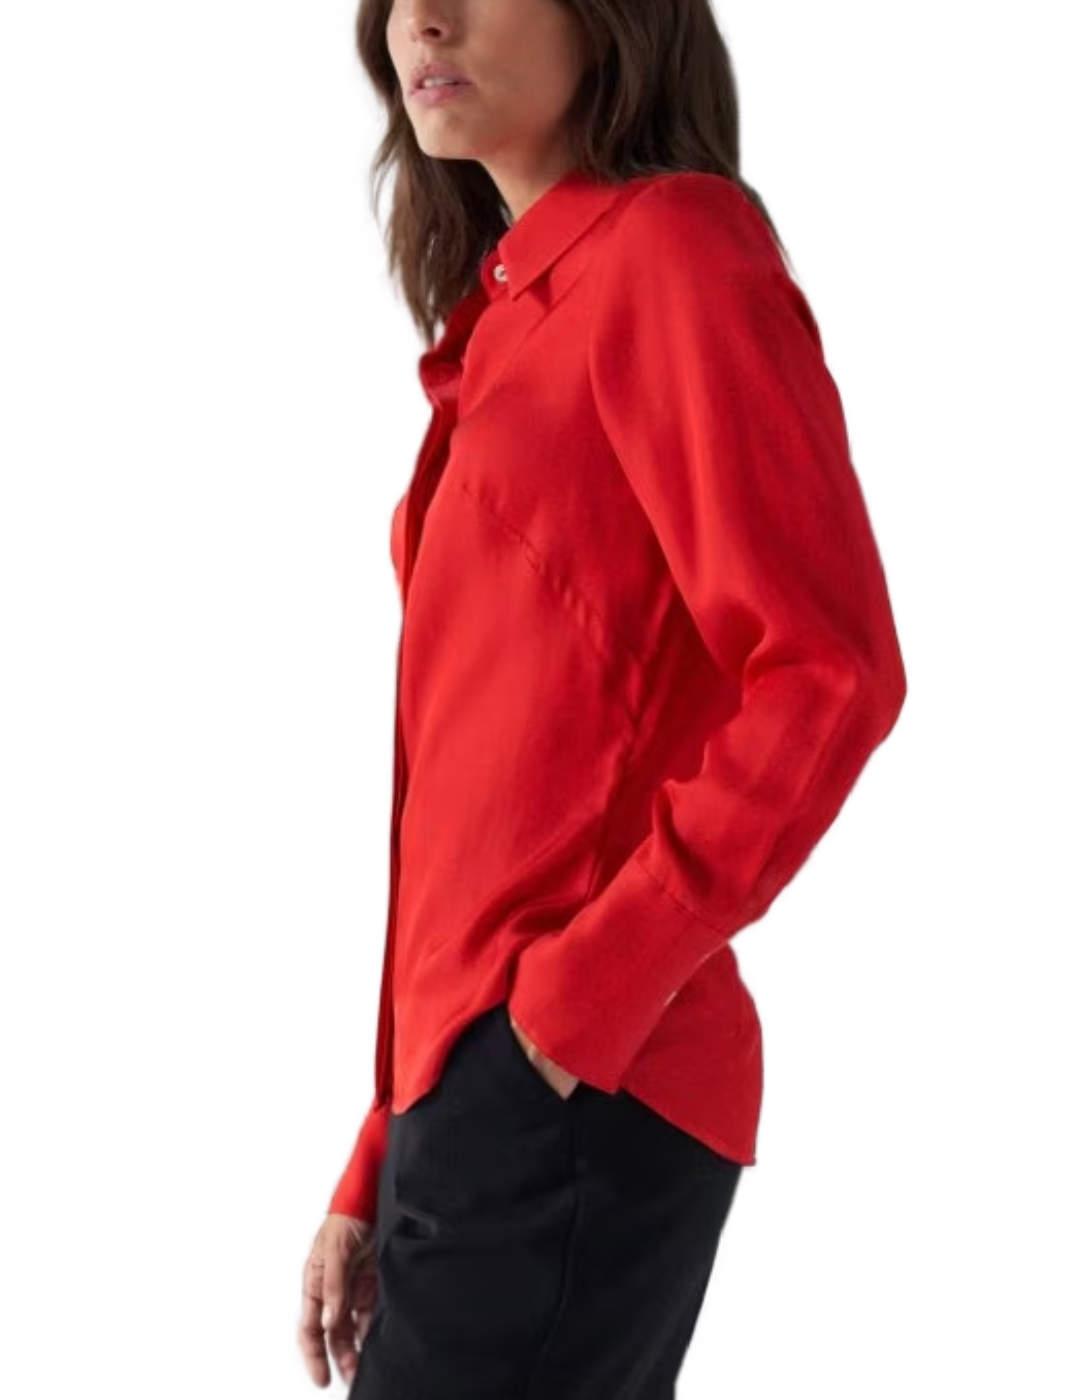 Camisa Salsa satinada en color rojo corte regular para mujer